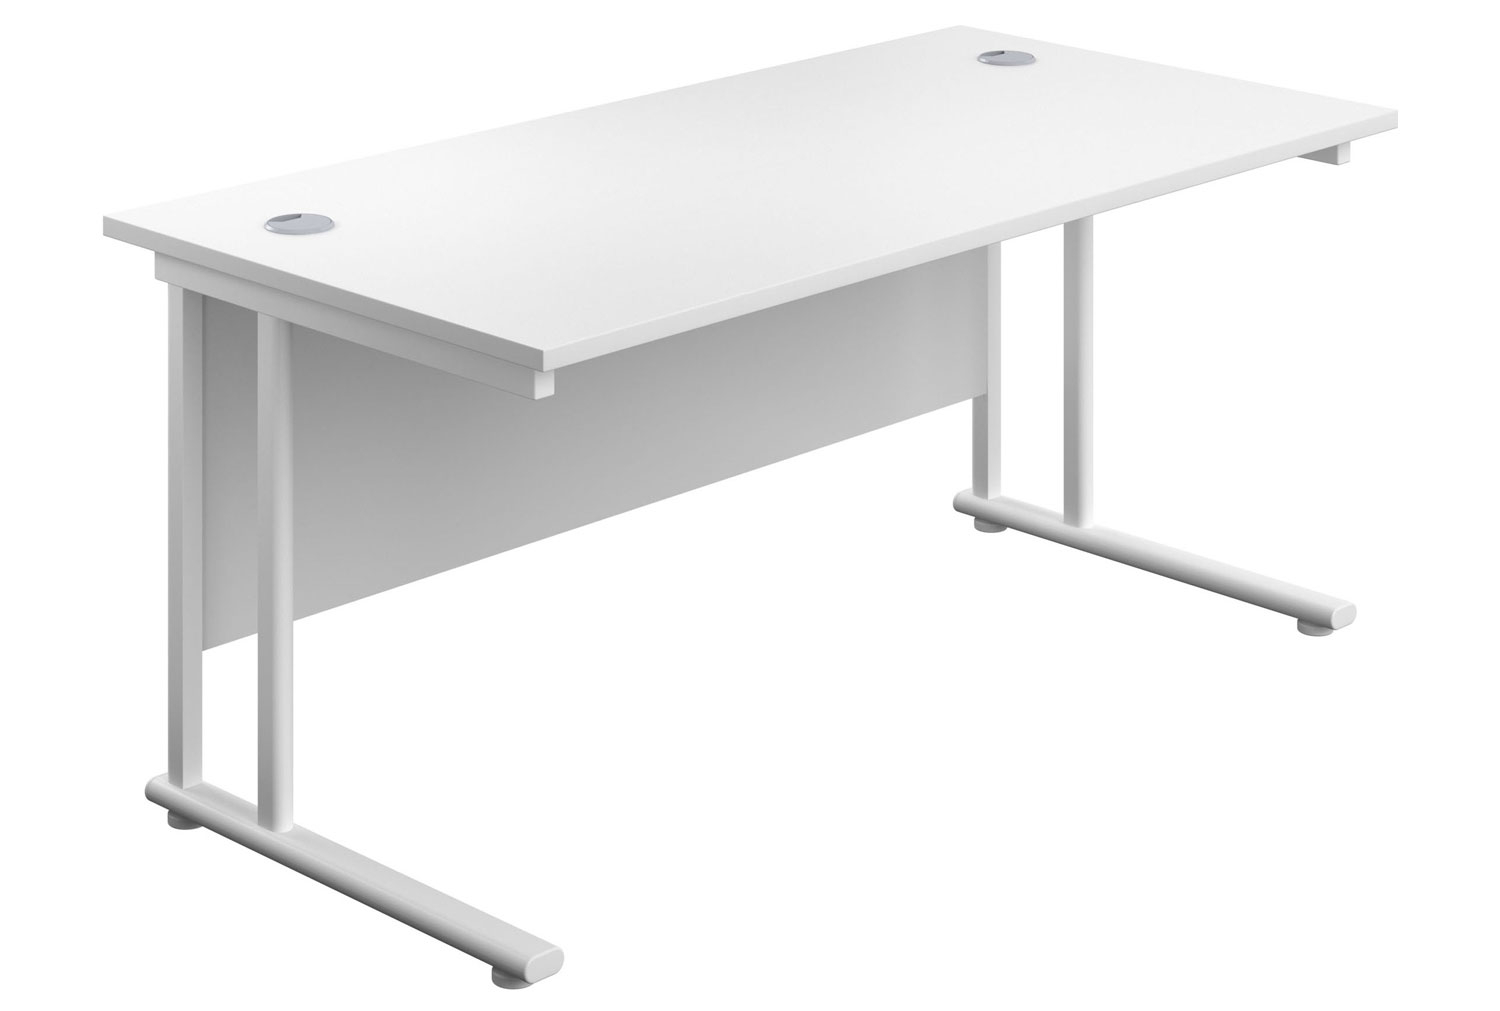 Impulse Rectangular Office Desk, 120wx80dx73h (cm), White Frame, White